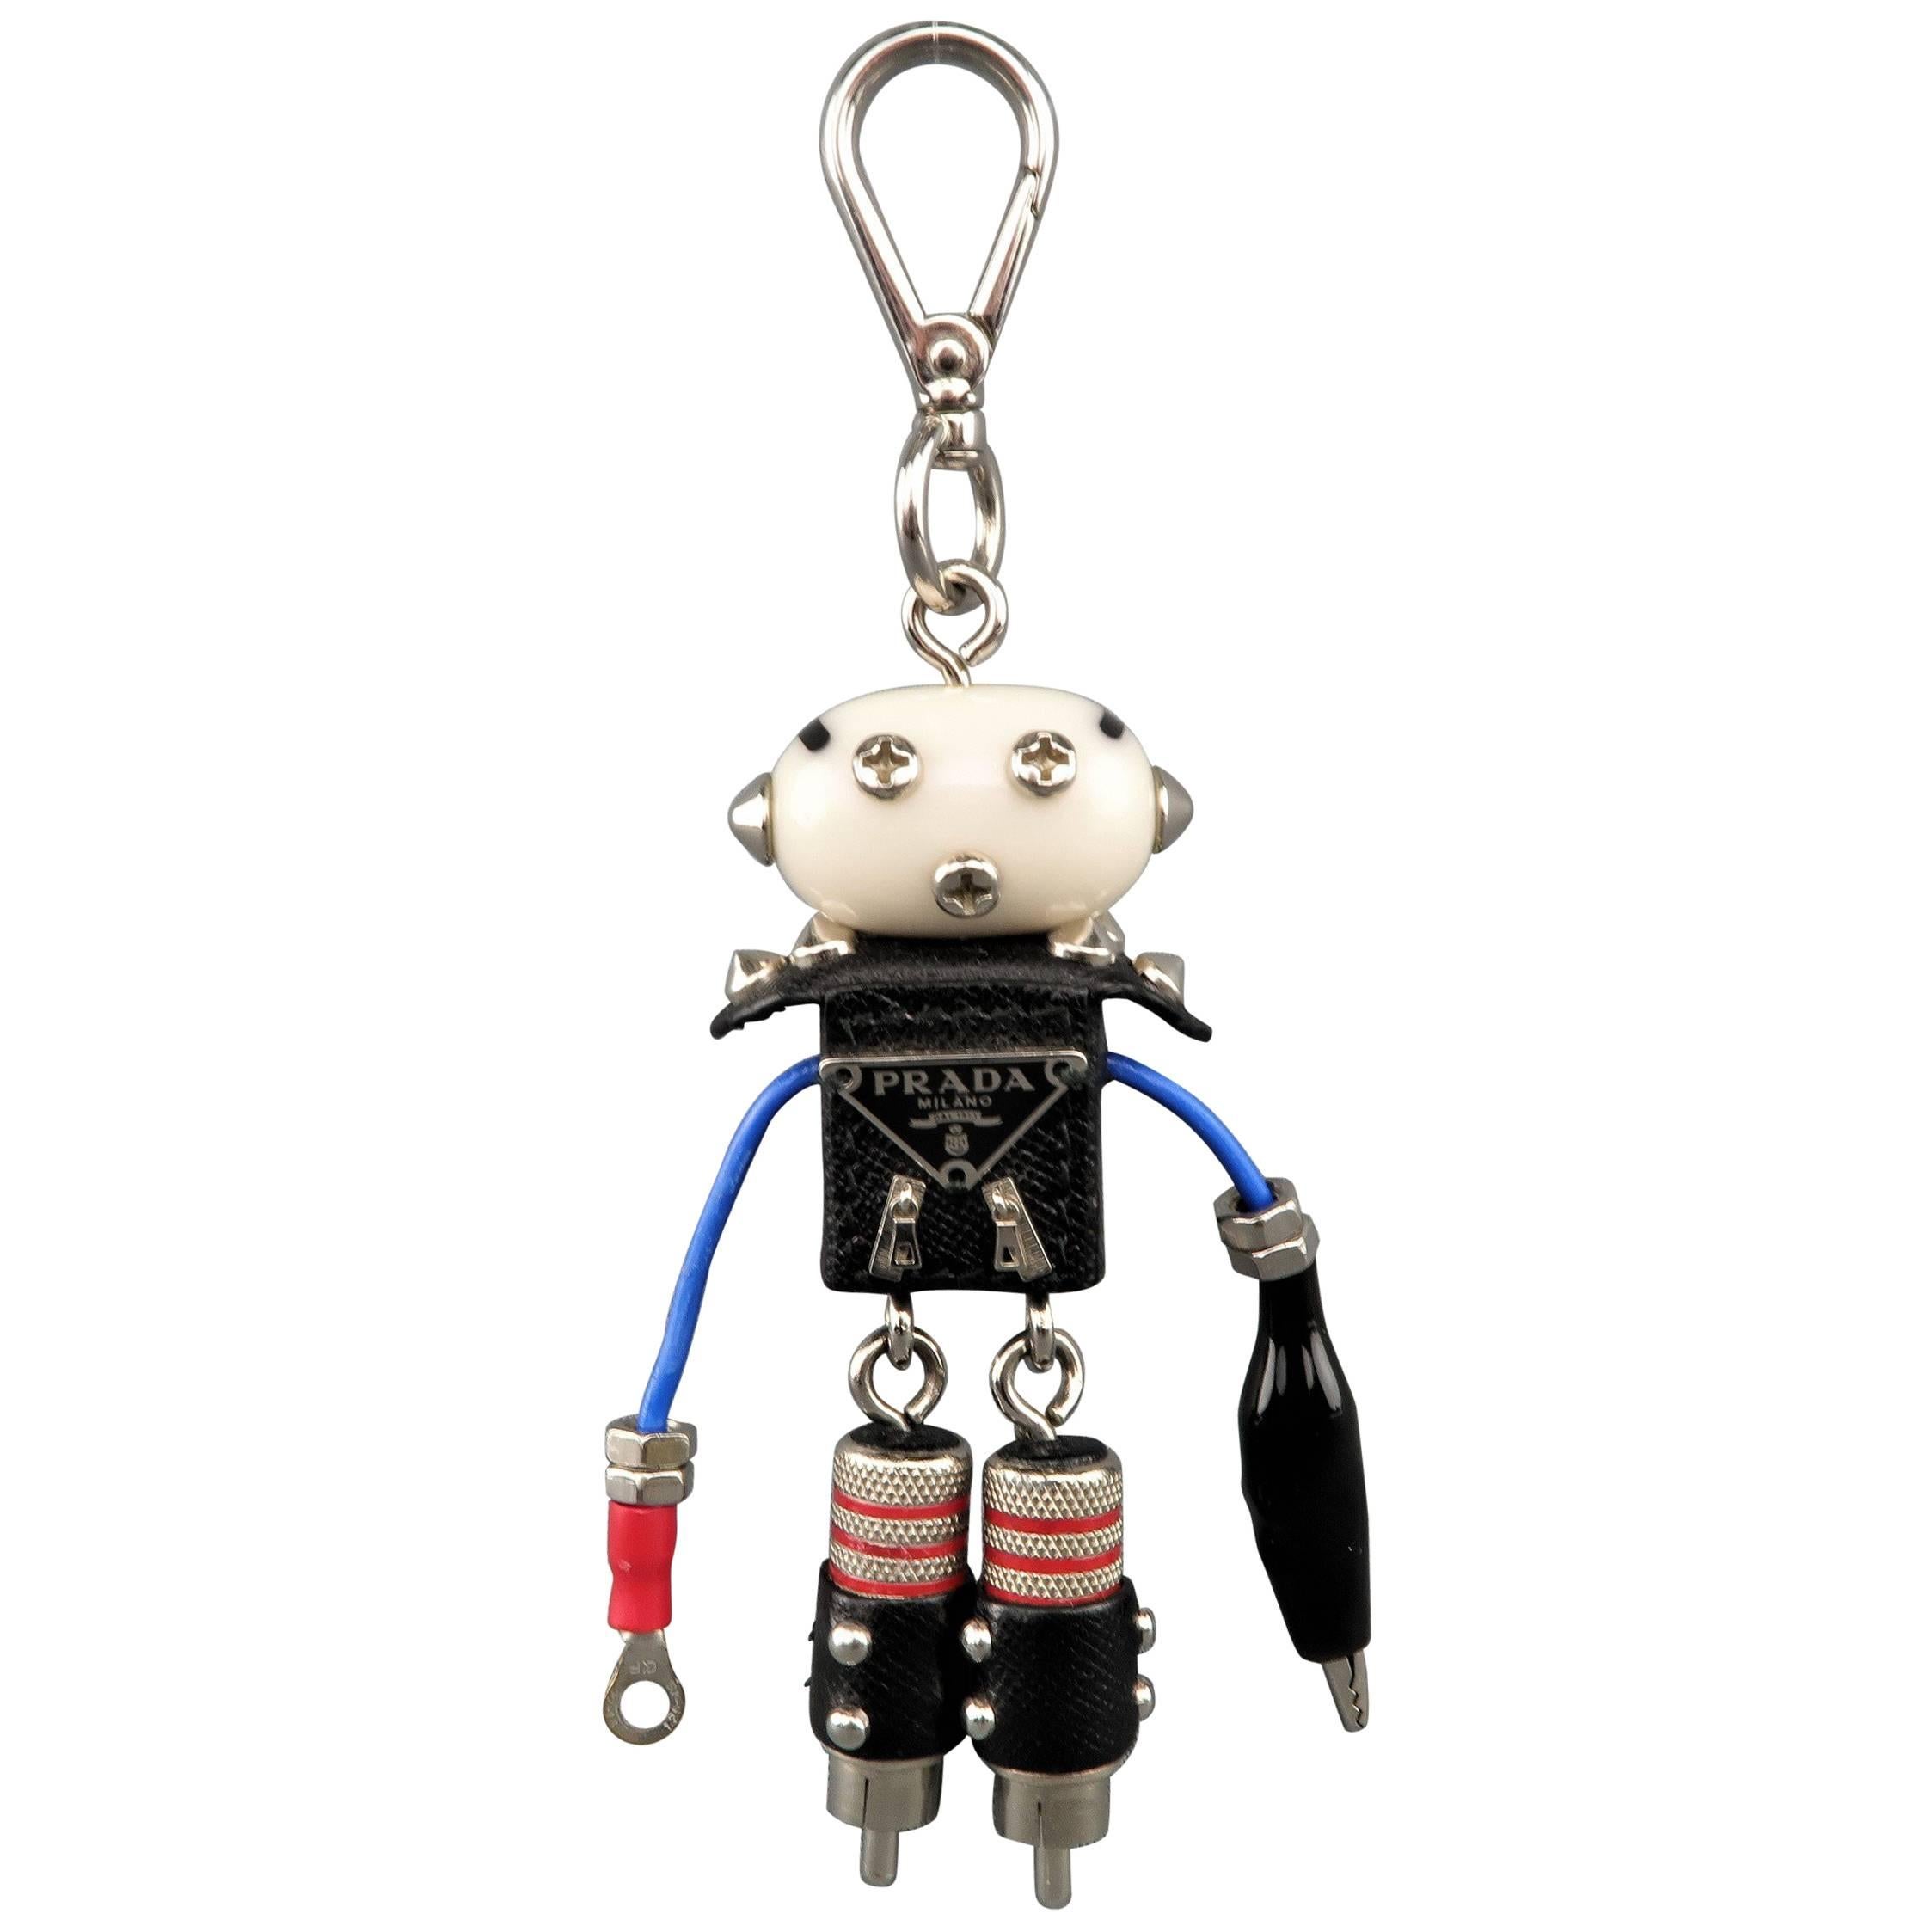 Prada Robot - 8 For Sale on 1stDibs | prada robot bag, prada robot 